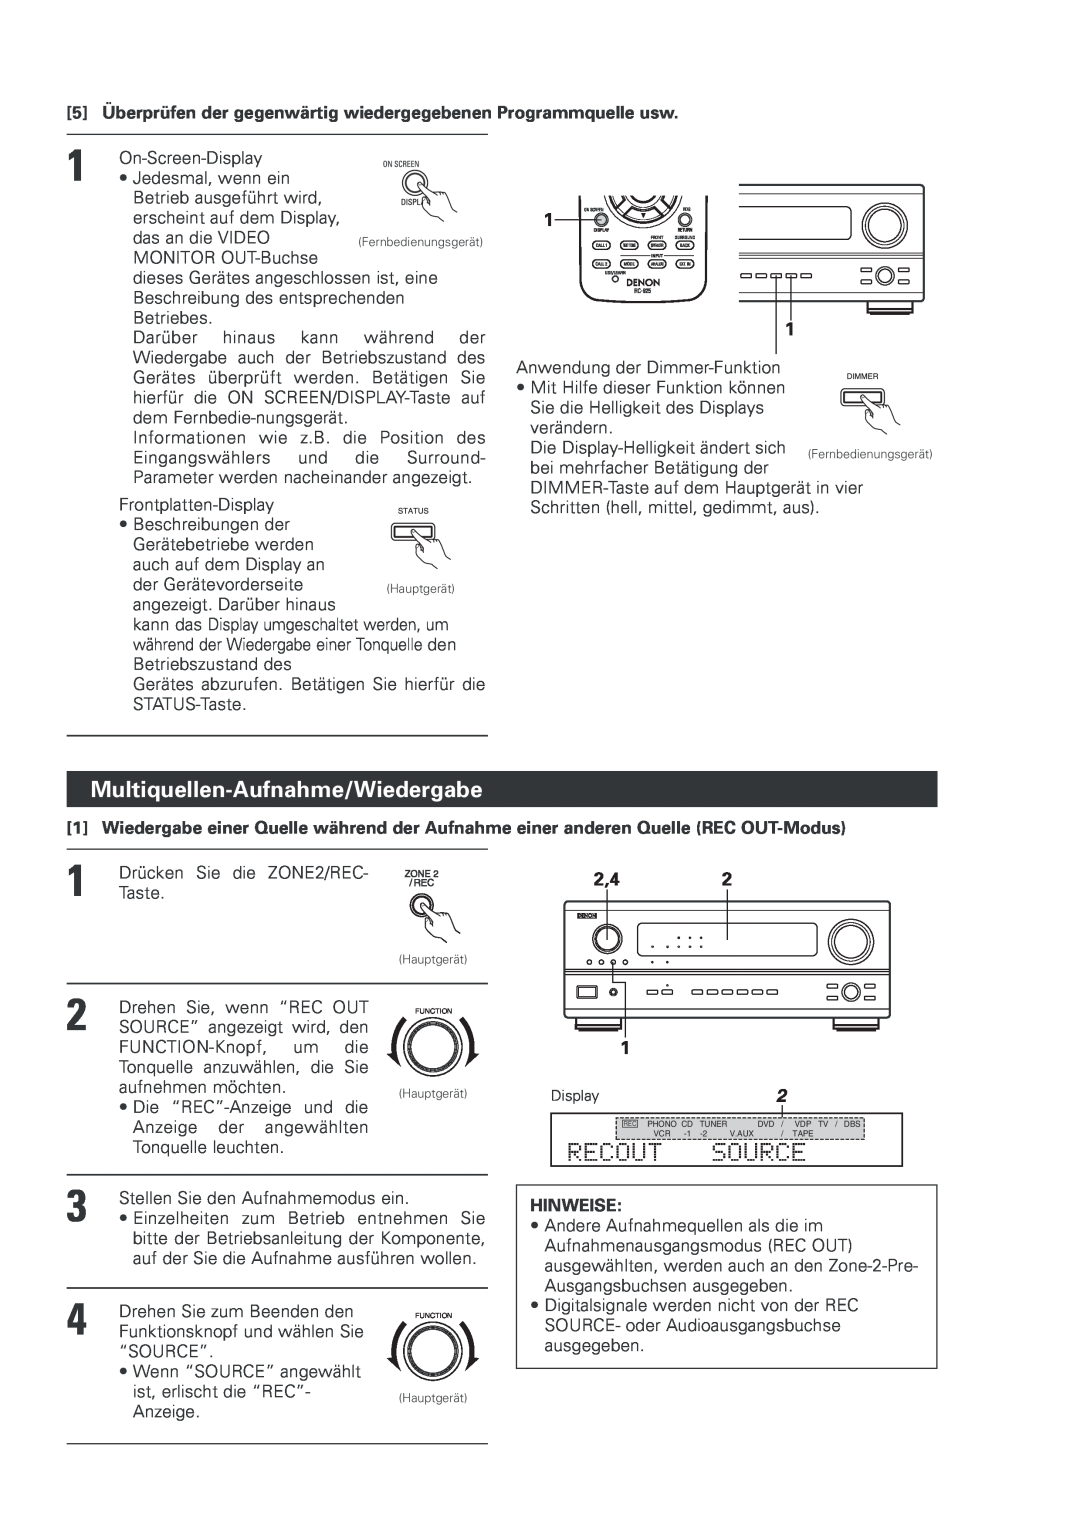 Denon AVR-2803 manual Multiquellen-Aufnahme/Wiedergabe, Recout, Source, 2,42, Hinweise 